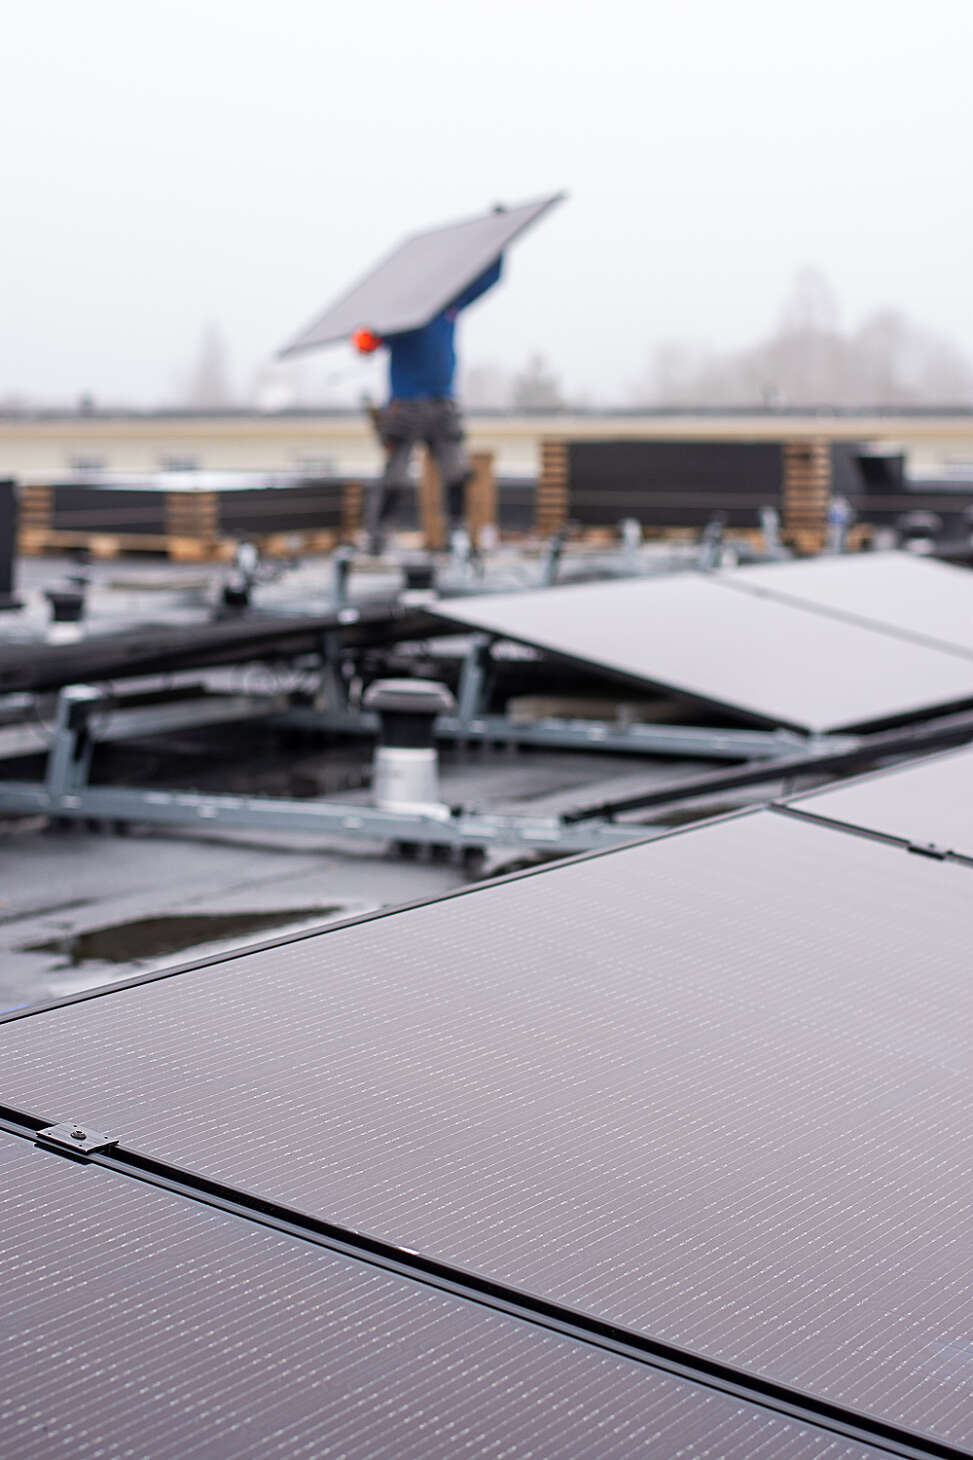 Energy Protect helpt bedrijf met duurzaam ondernemen met plaatsing zonnepanelen